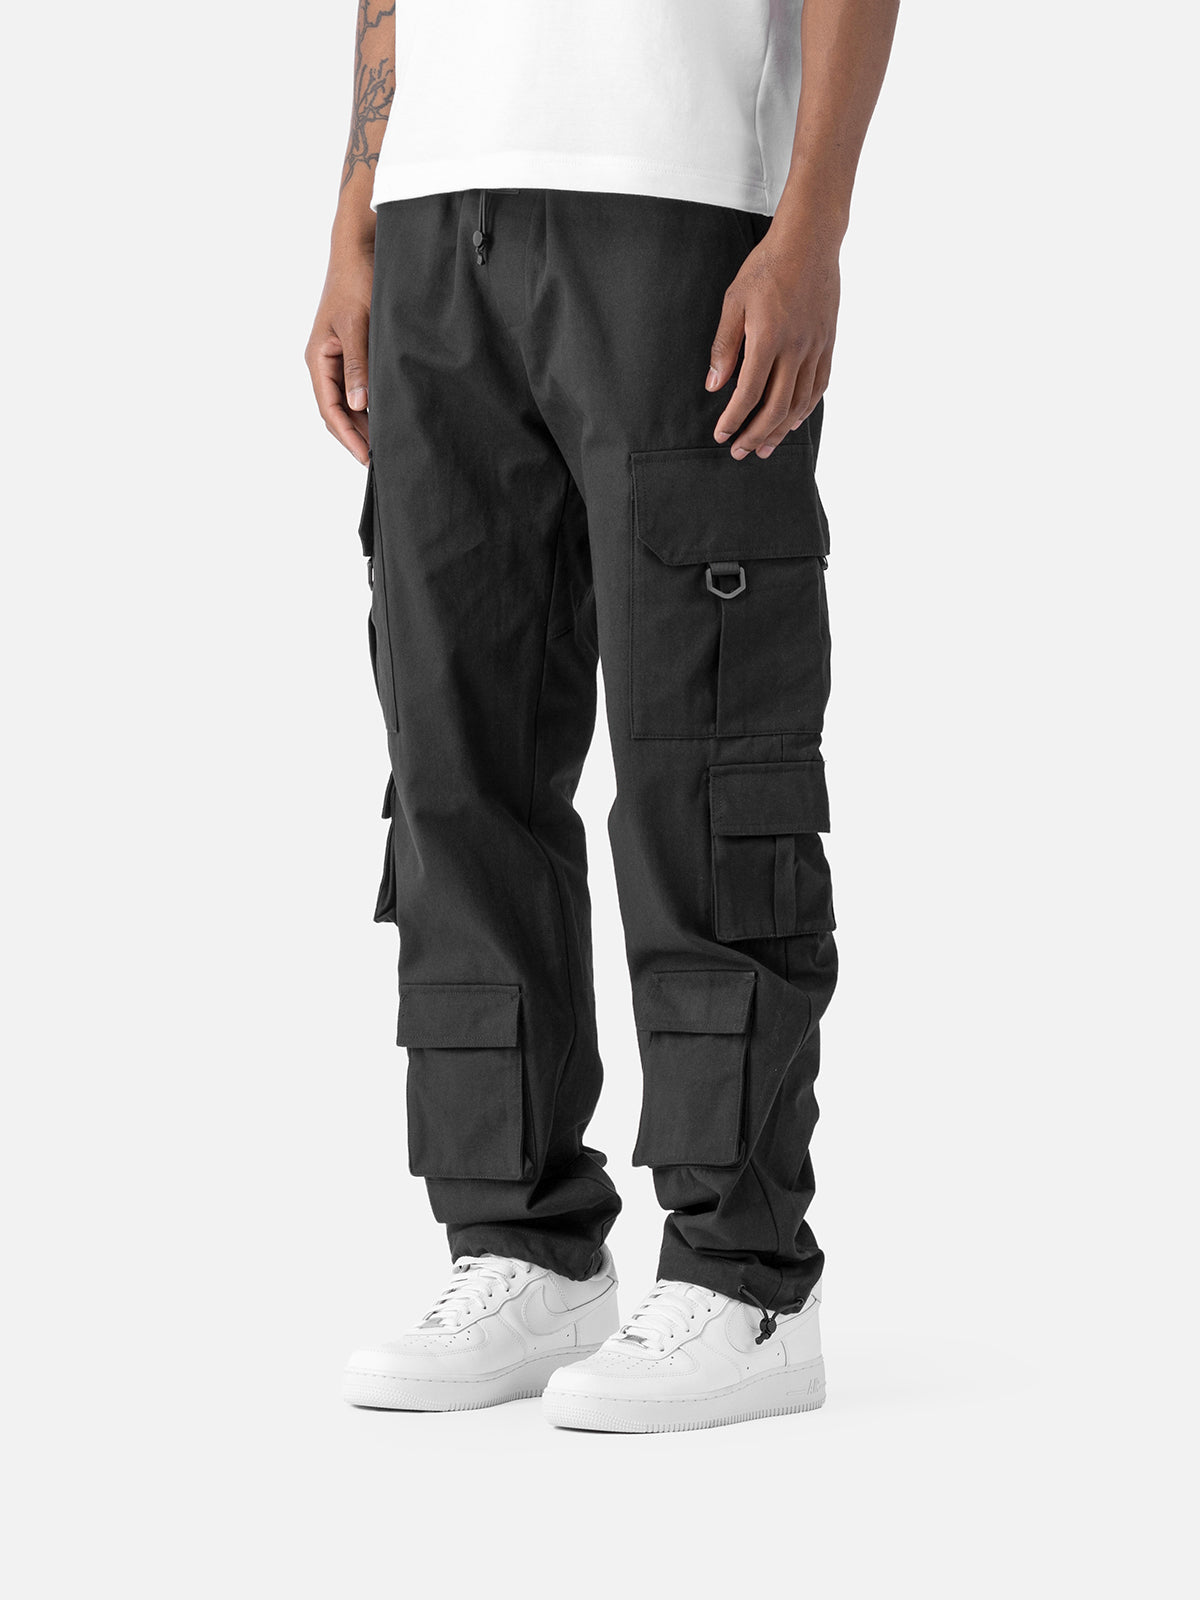 N30 Cargo Pants - Black | Blacktailor – BLACKTAILOR